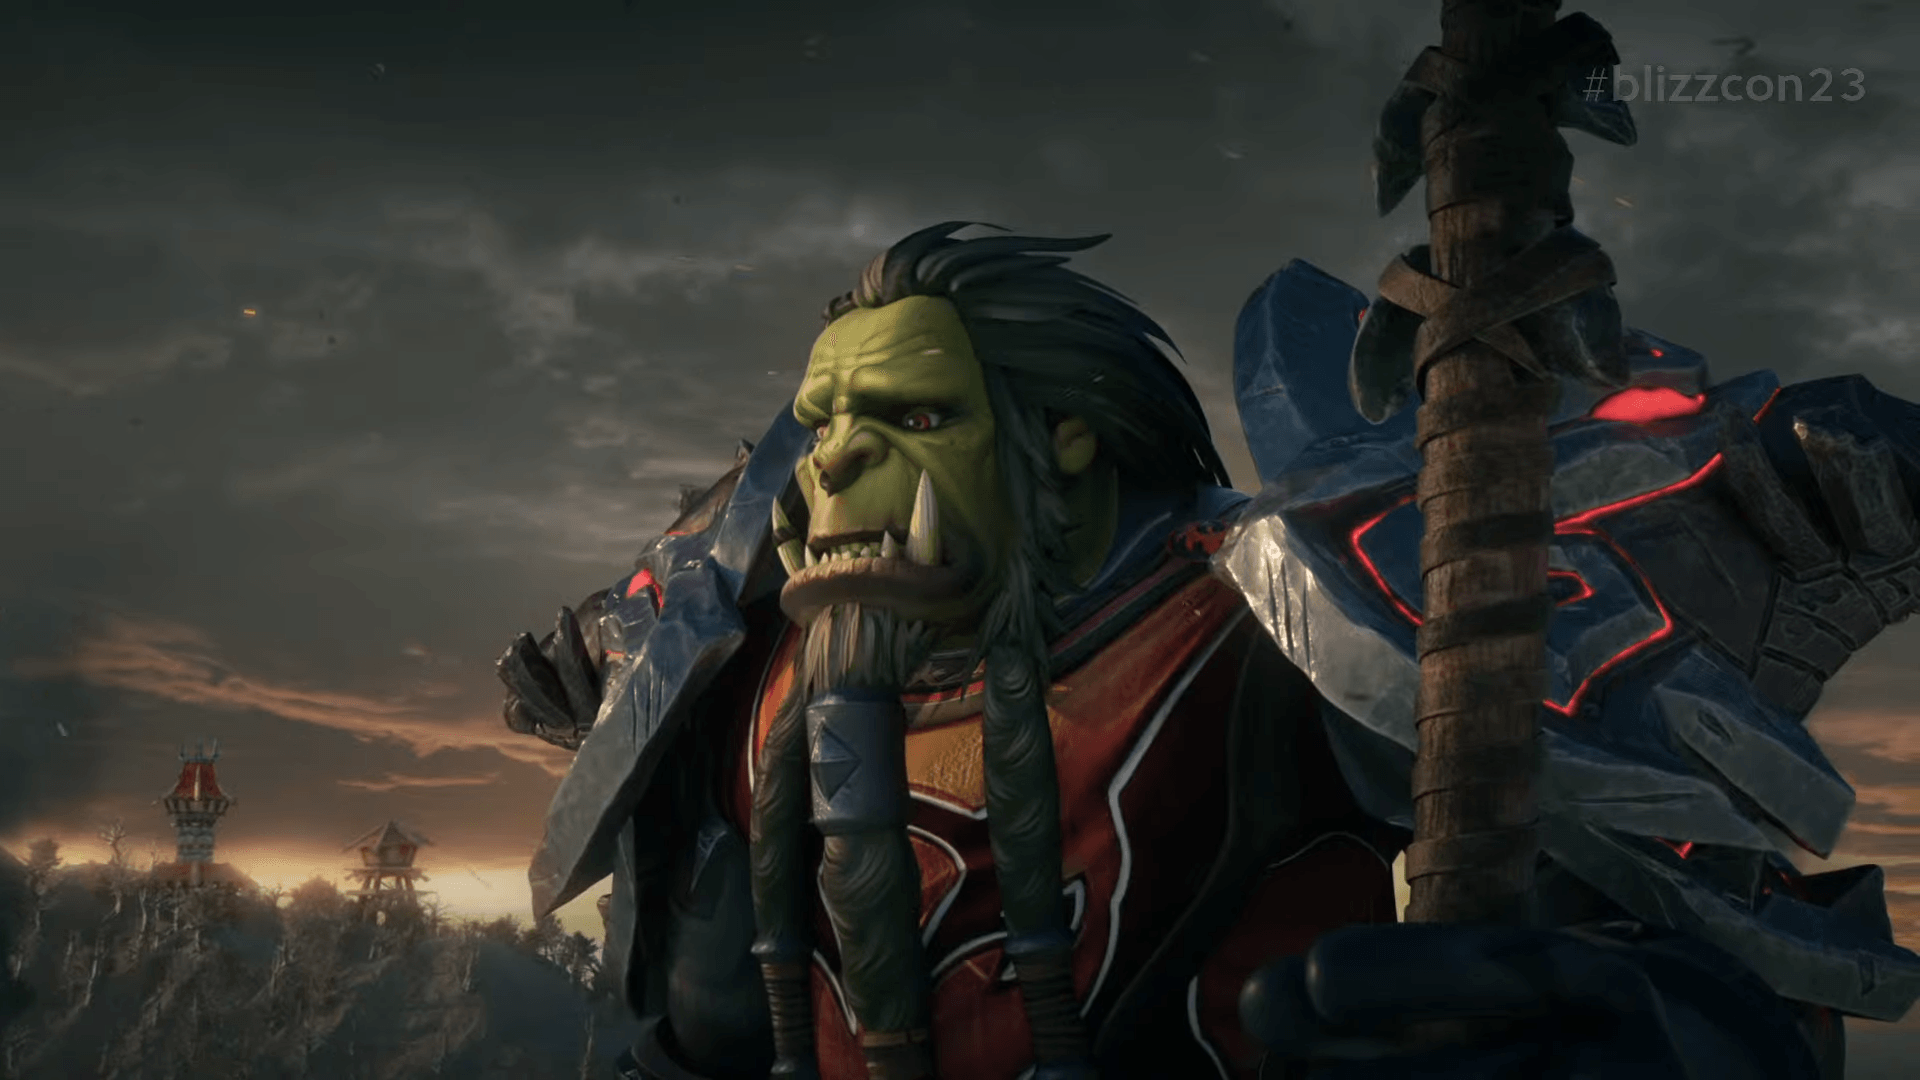 Data Cataclysmu! Blizzard wraca do Chin! Rocznicowa edycja World of Warcraft!